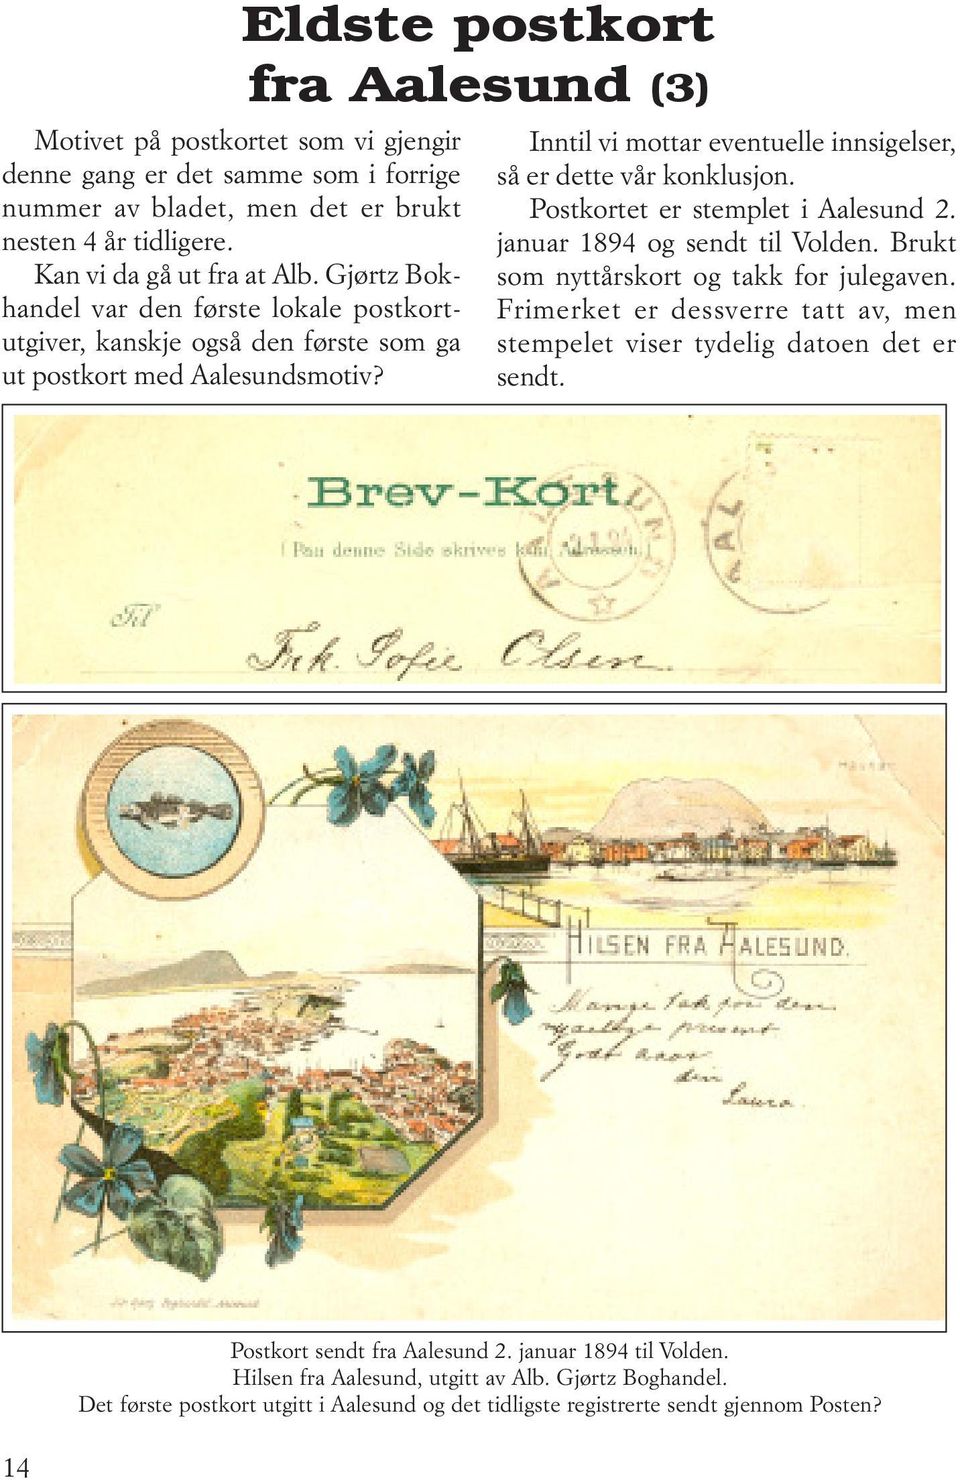 Eldste postkort fra Aalesund (3) Inntil vi mottar eventuelle innsigelser, så er dette vår konklusjon. Postkortet er stemplet i Aalesund 2. januar 1894 og sendt til Volden.